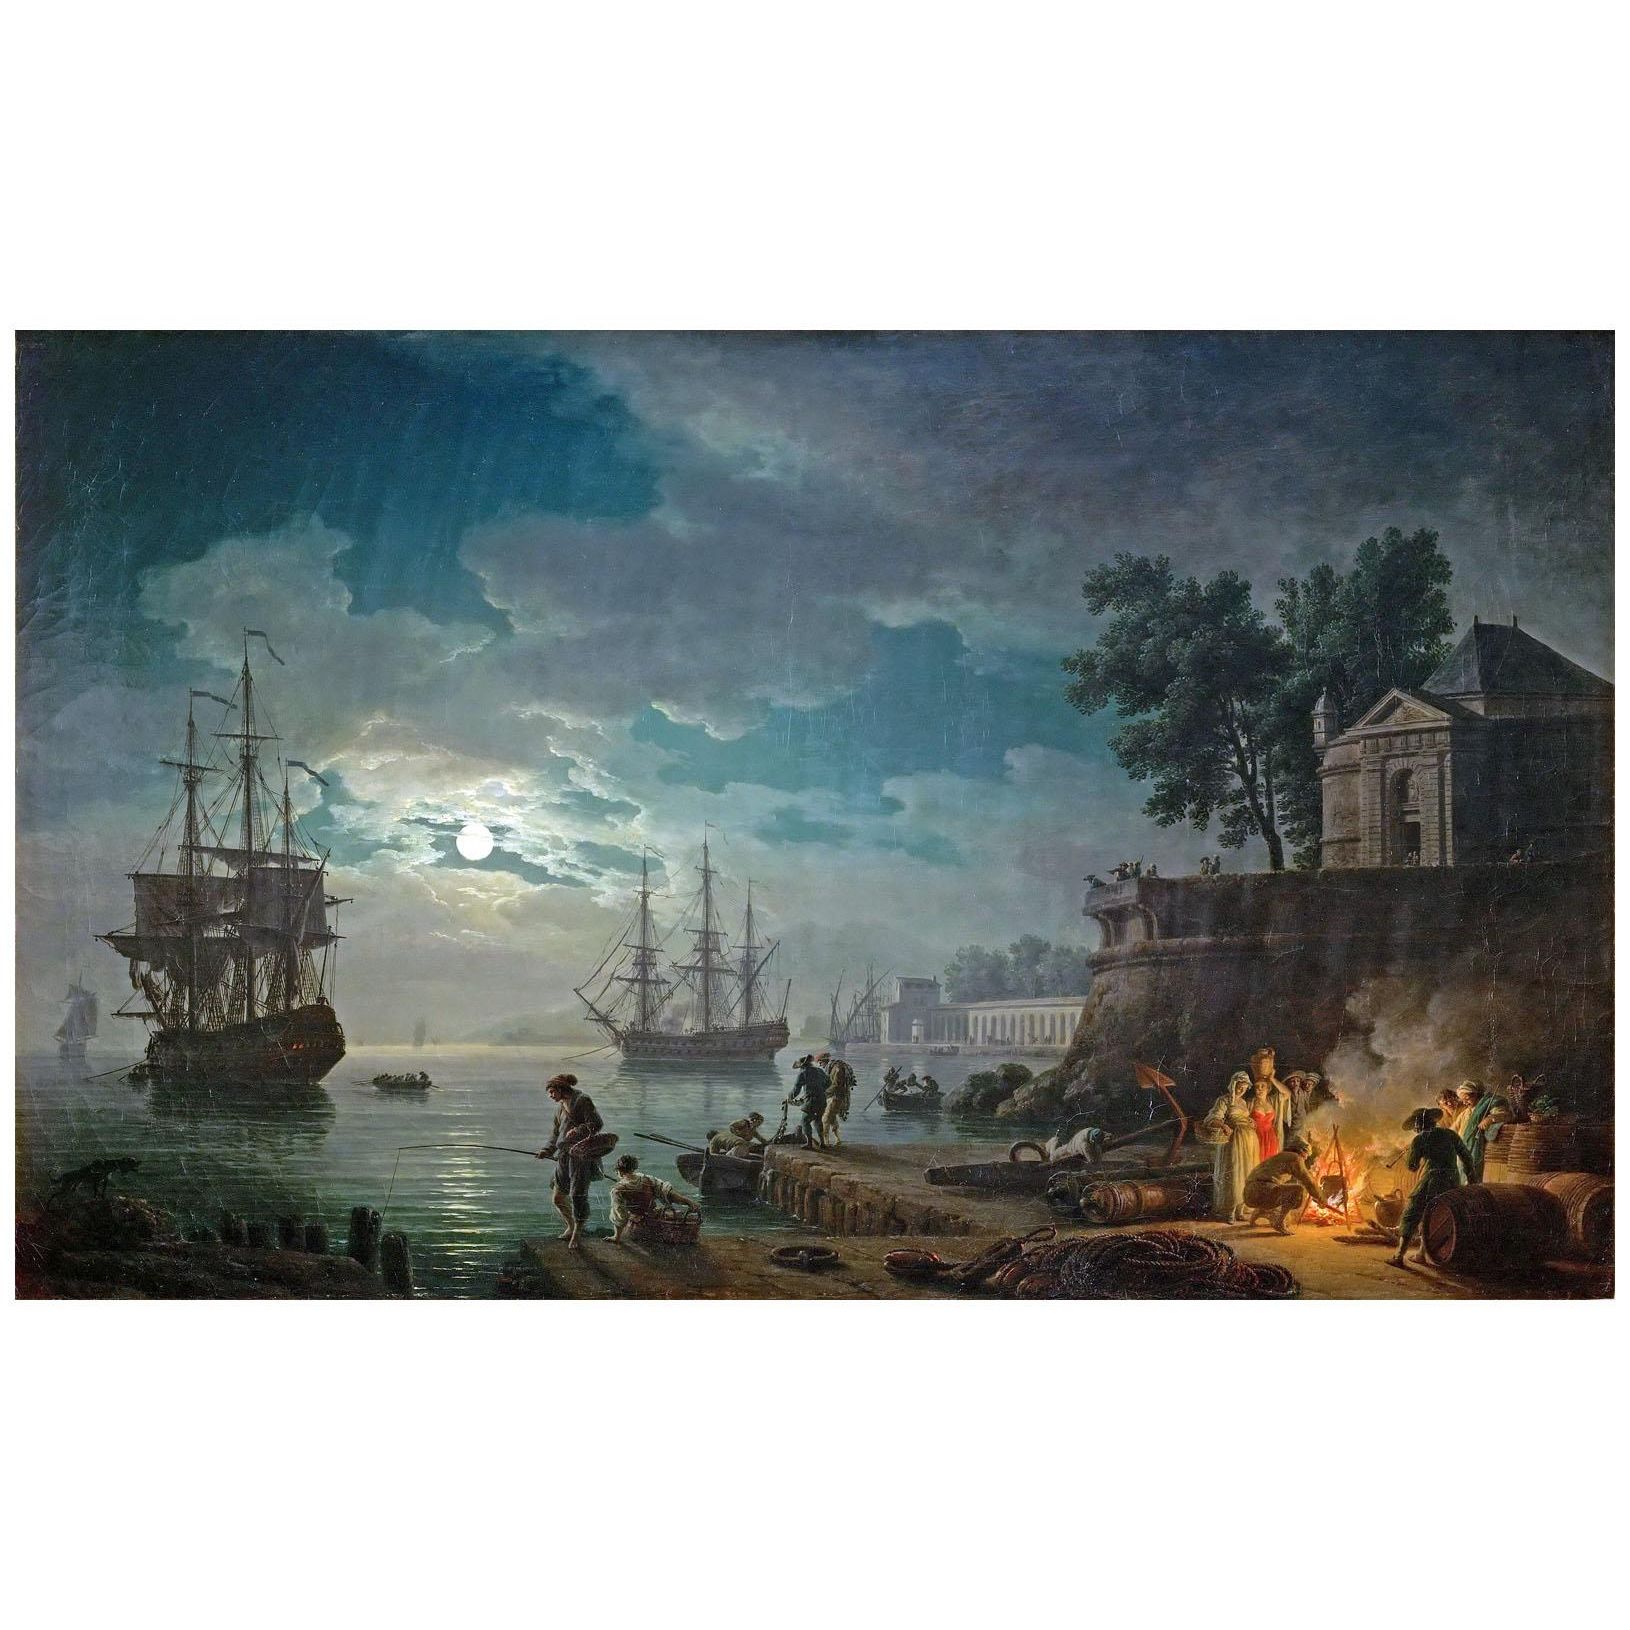 Joseph Vernet. Port de mer au clair de lune. 1771. Musee du Louvre